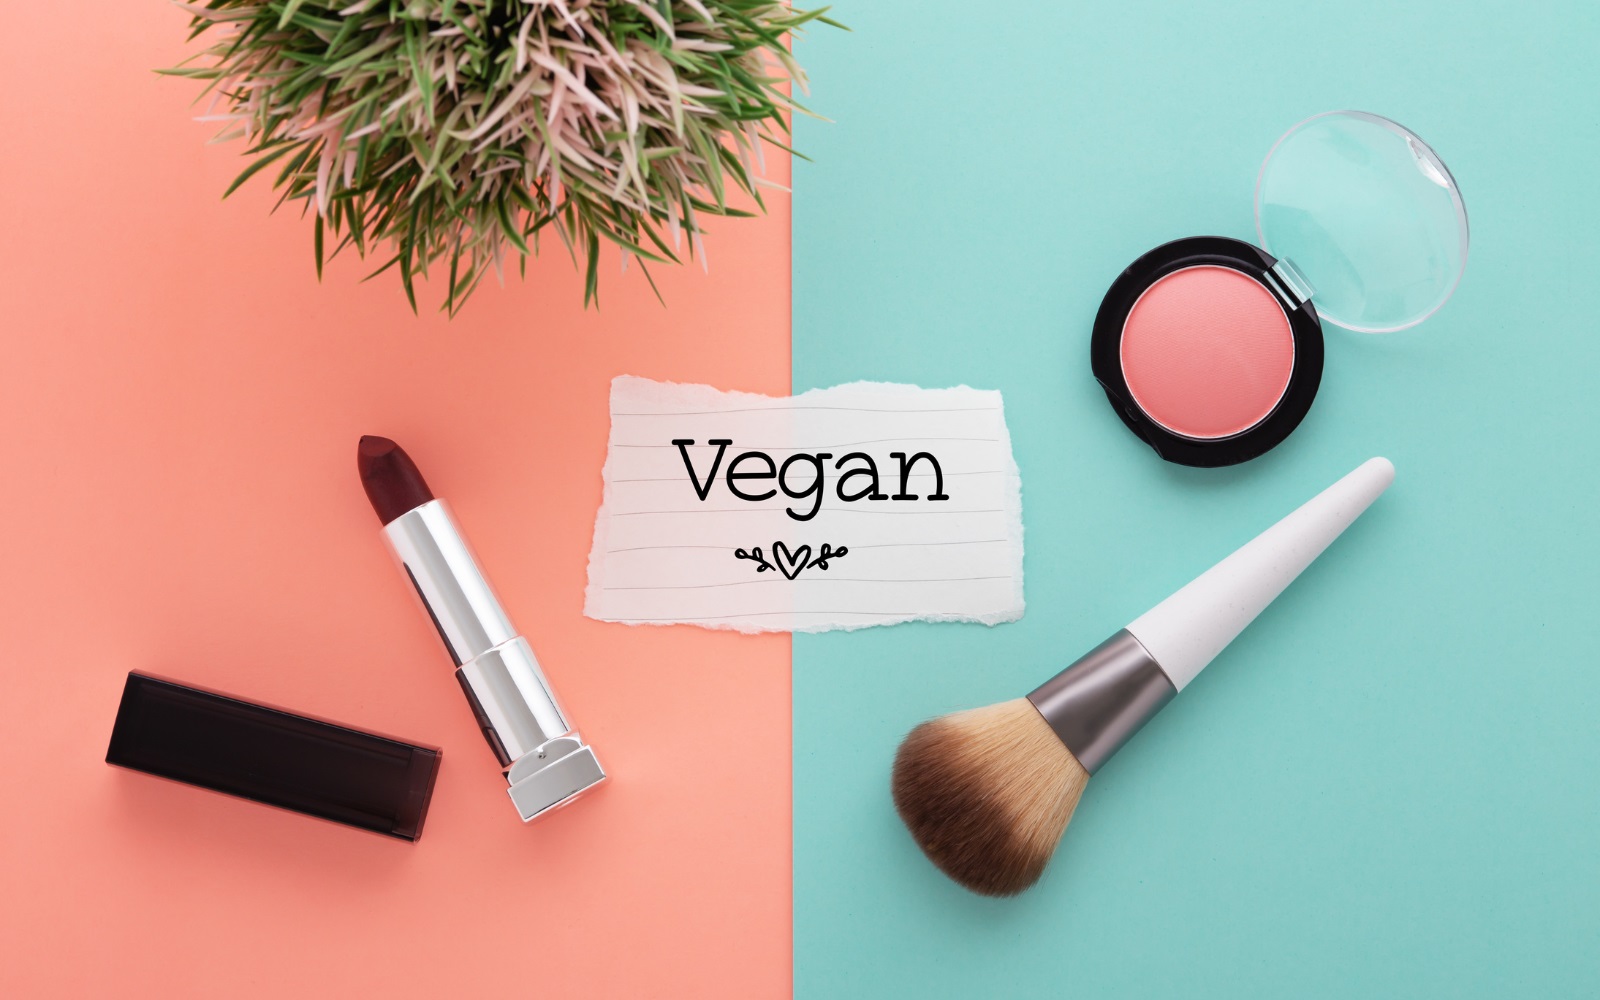 Vegan Makeup Business Name Ideas.